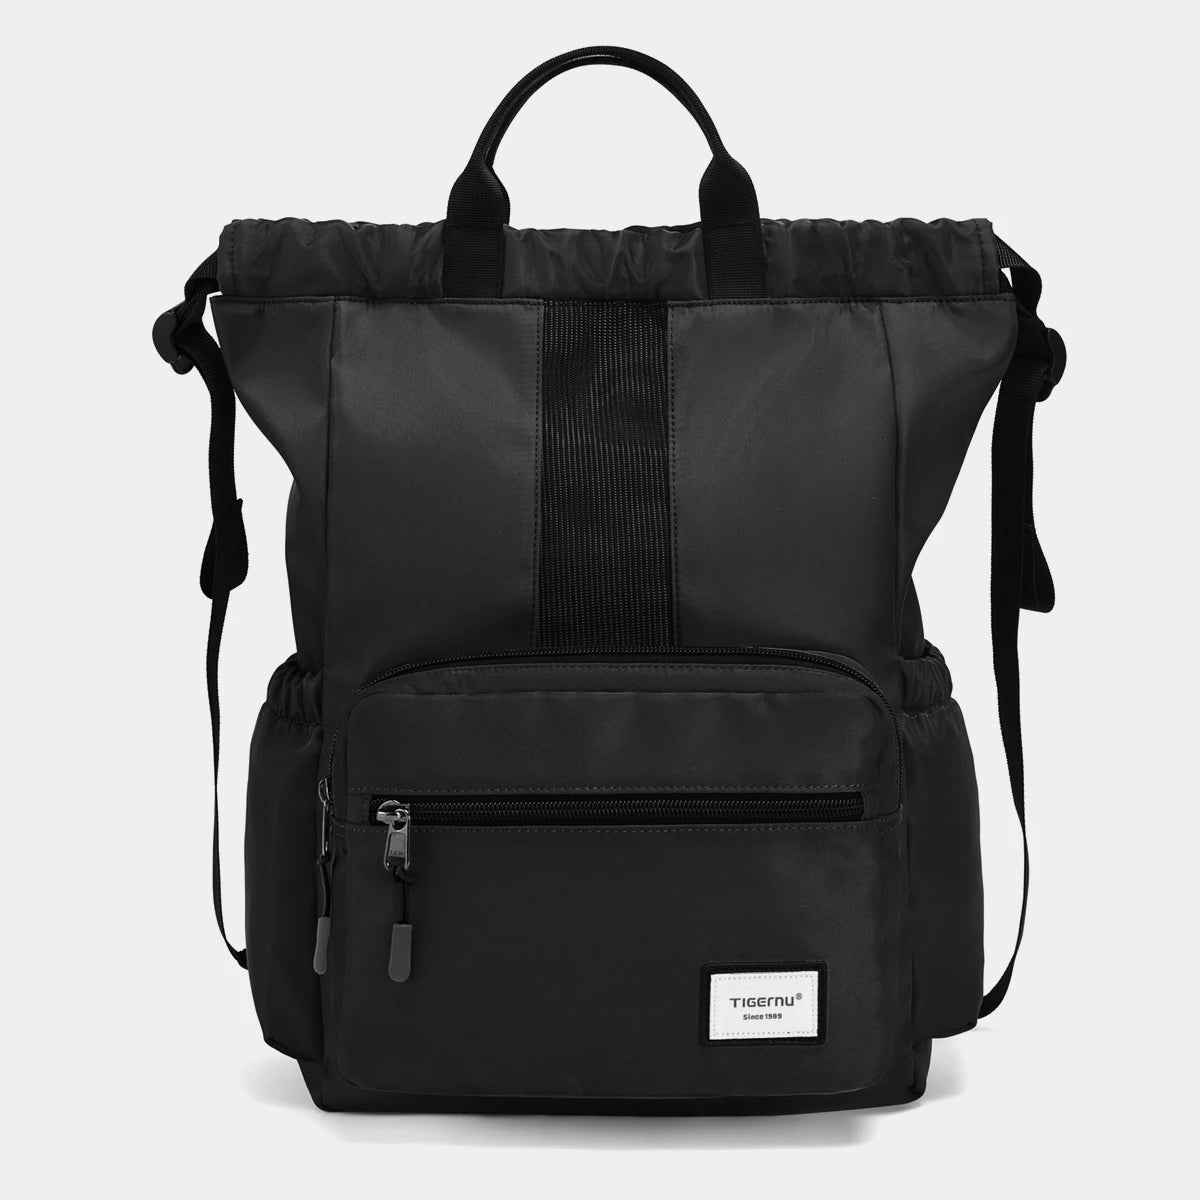 Ultralight Portable Folding Female Bag Black